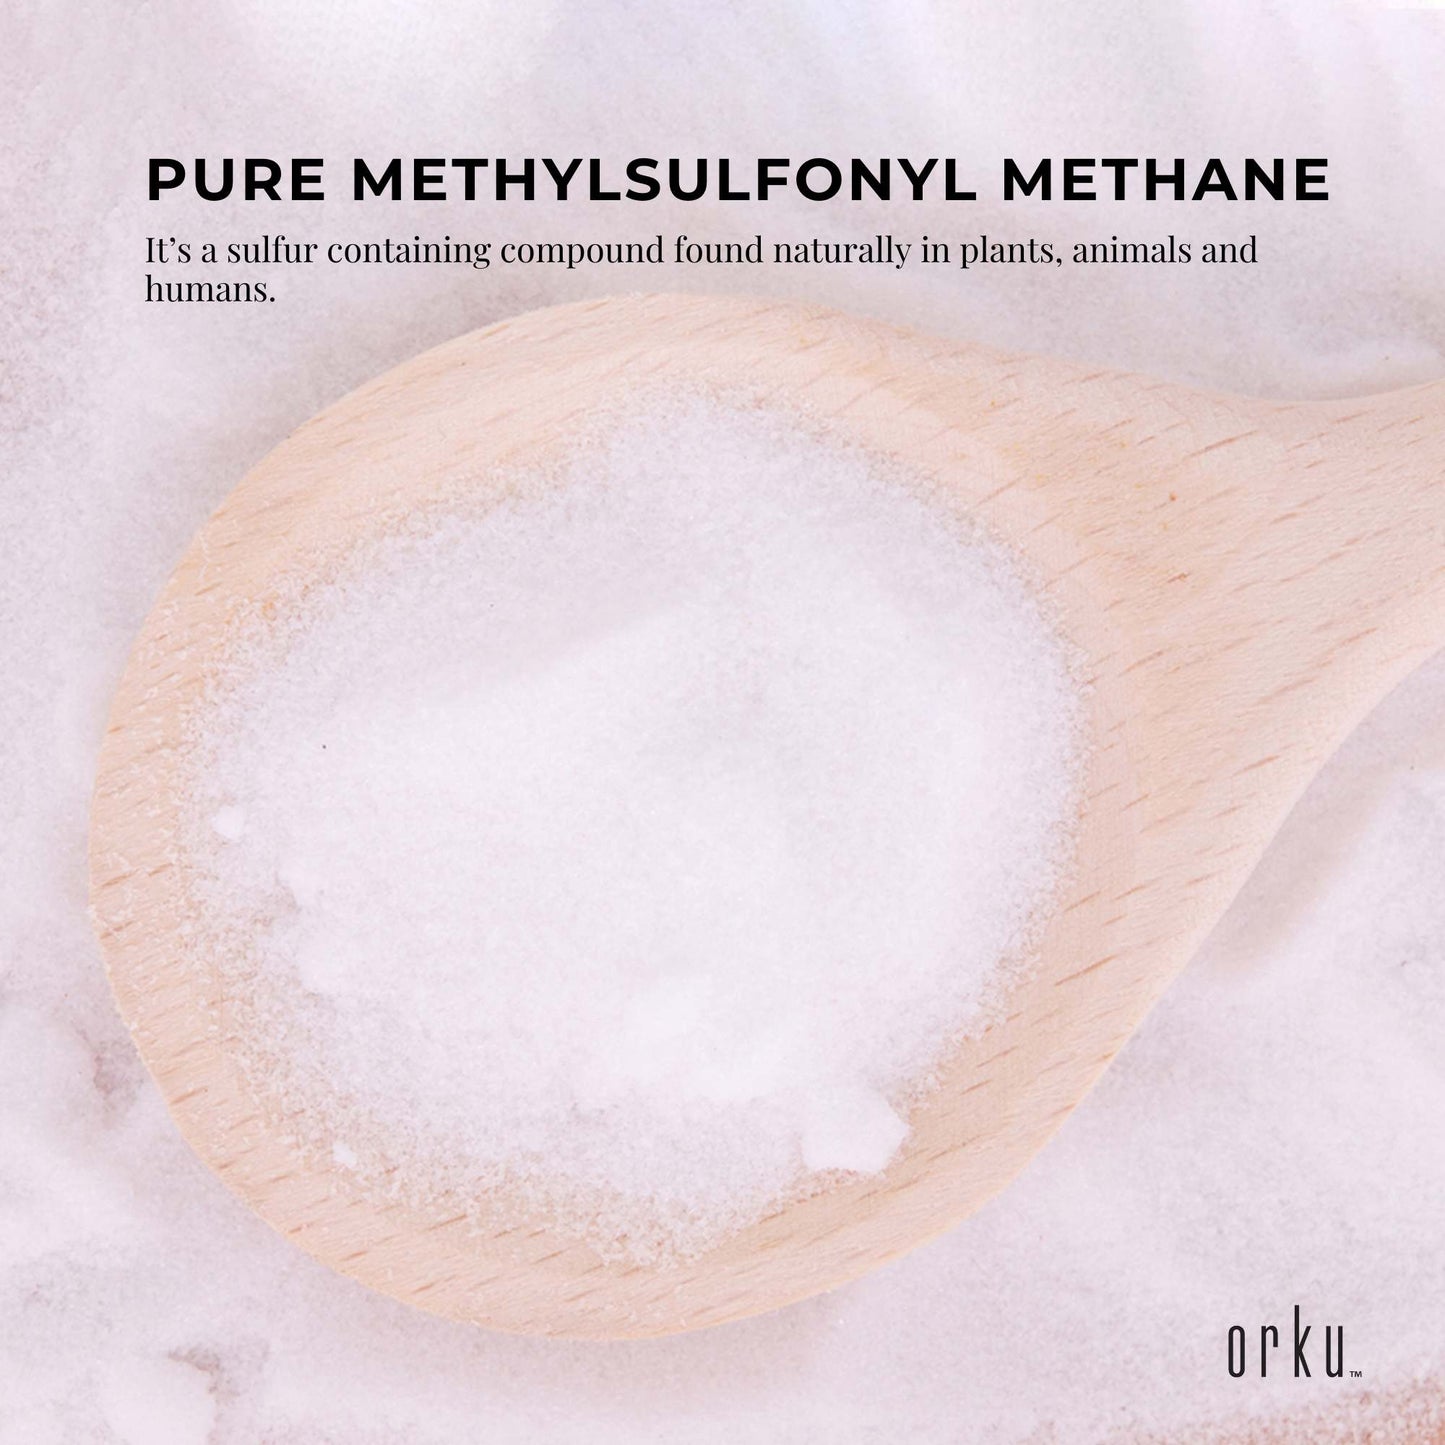 MSM Powder or Crystals Bucket - 99% Pure Methylsulfonylmethane Dimethyl Sulfone